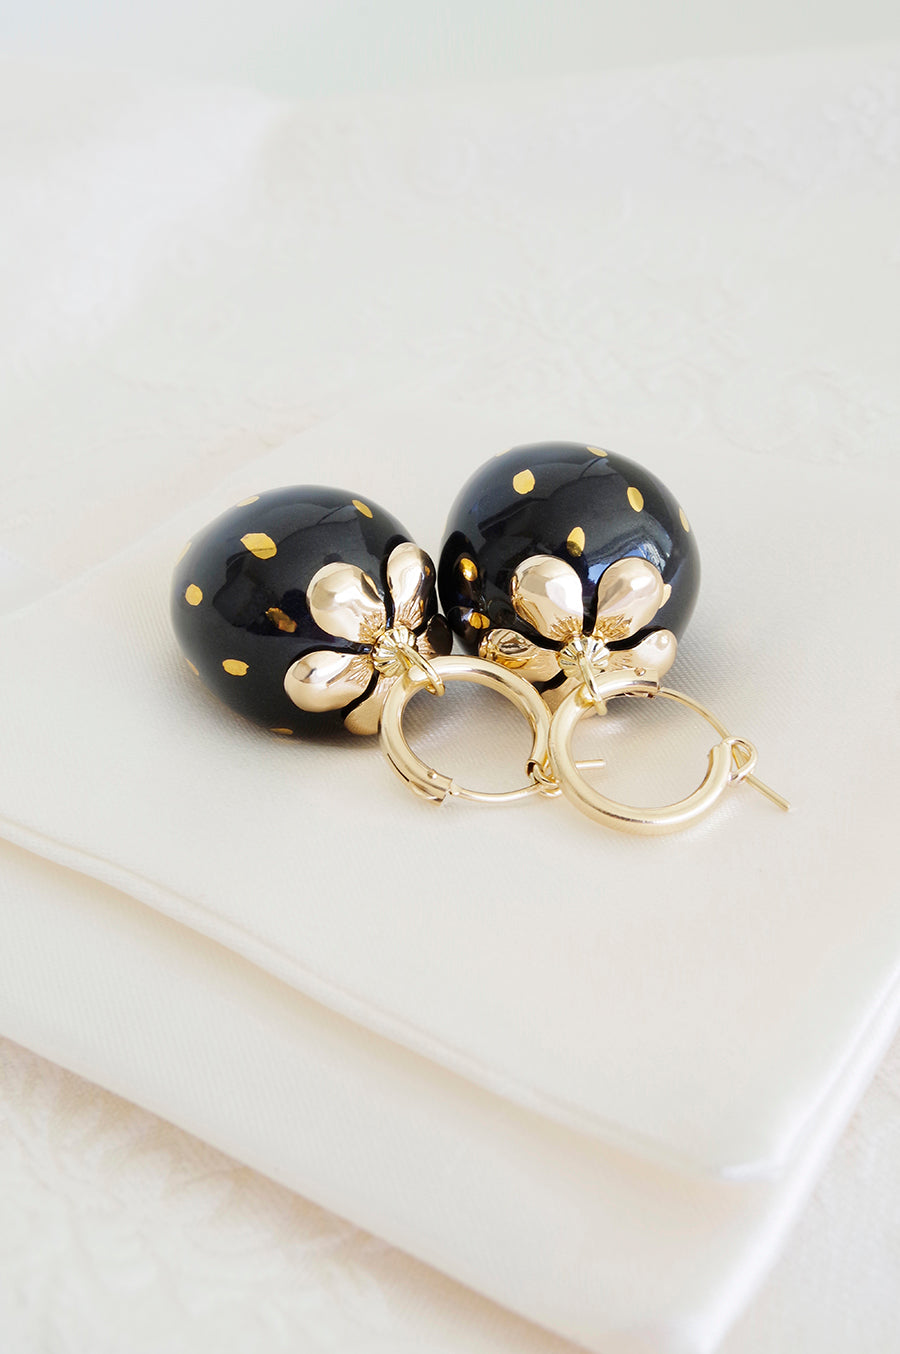 Golden Black Porcelain Strawberry Earrings